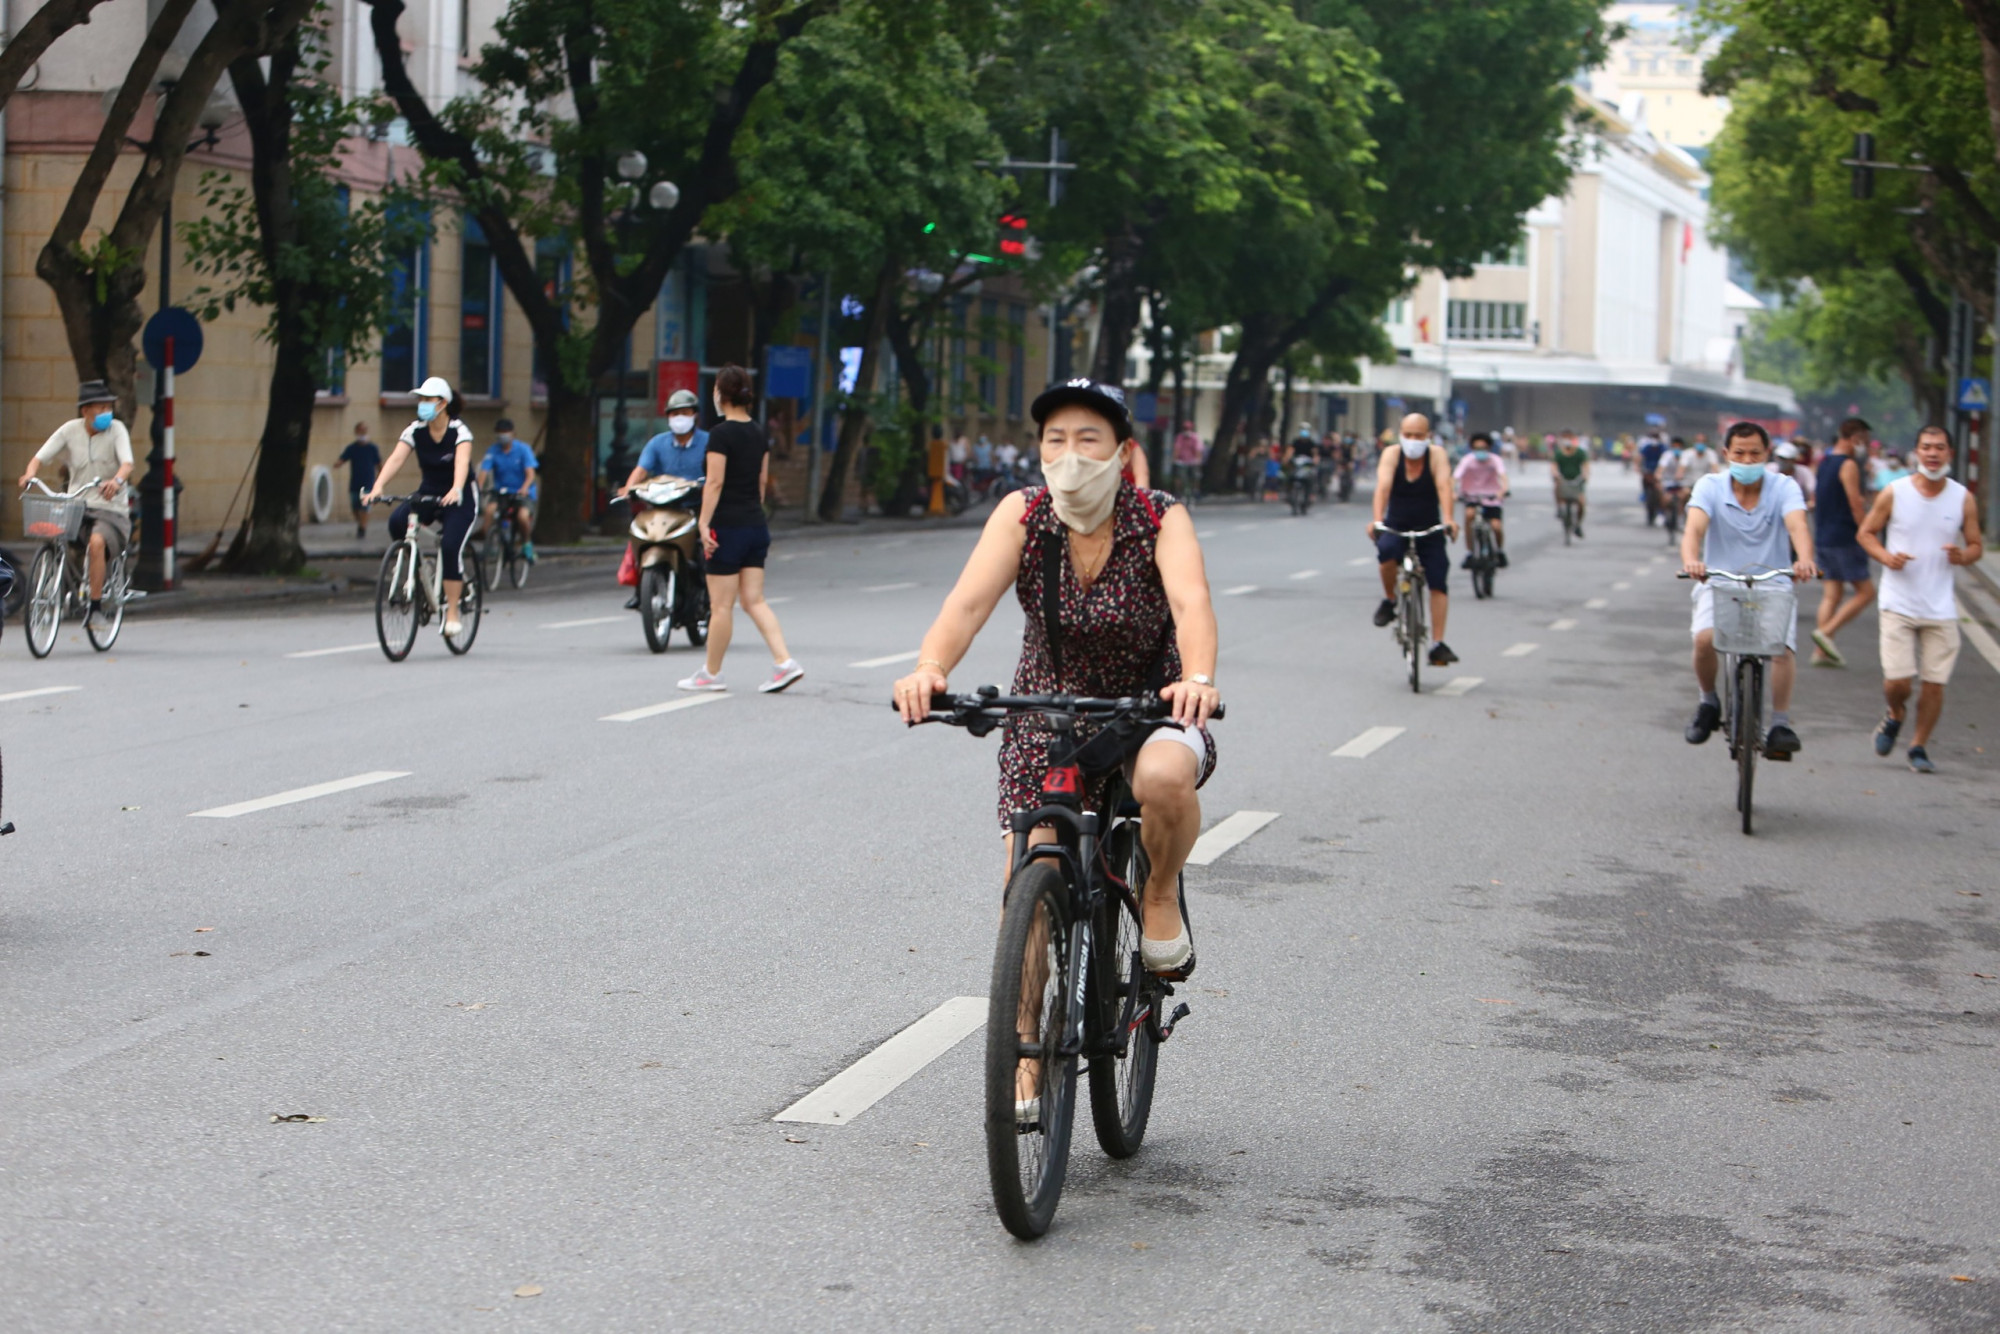 Đường phố Hà Nội bắt đầu xuất hiện trở lại các đoàn xe đạp thể thao. Đây là một trong những phong trào đang phát triển trong thời gian qua của người dân Thủ đô.